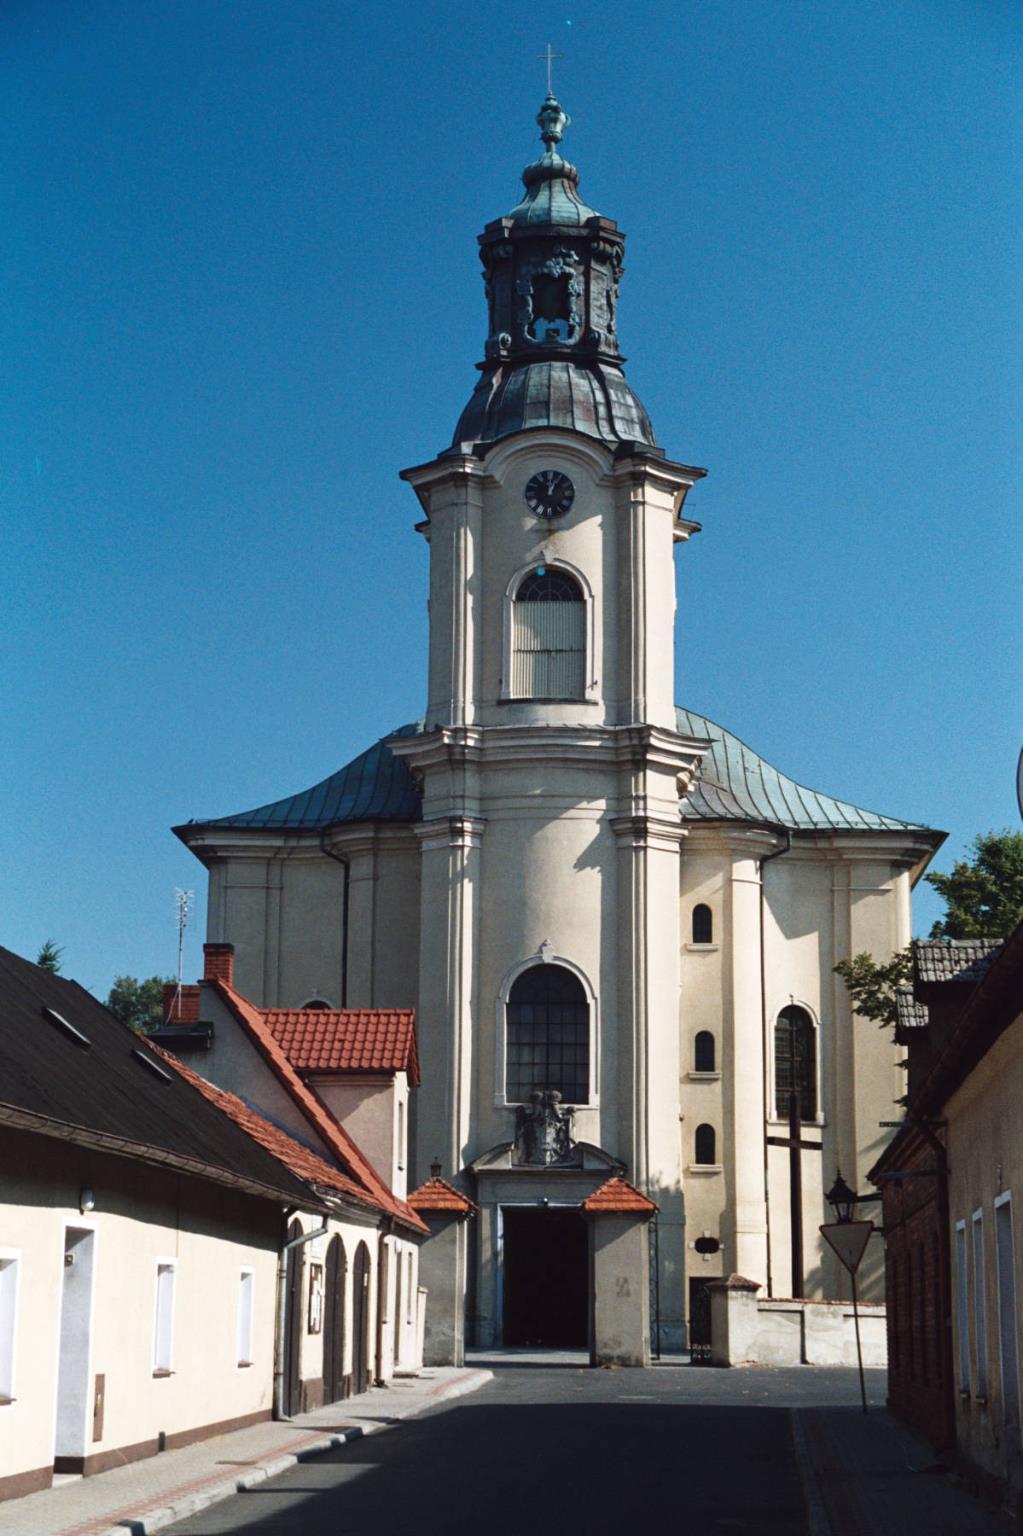 Kościół w Rydzynie pw. św. Stanisława Biskupa Późnobarokowy kościół św. Stanisława zbudowany w latach 1746 1751 według projektu K.M. Frantza. Obecny wystrój klasycystyczny wnętrza, wykonany przez I.